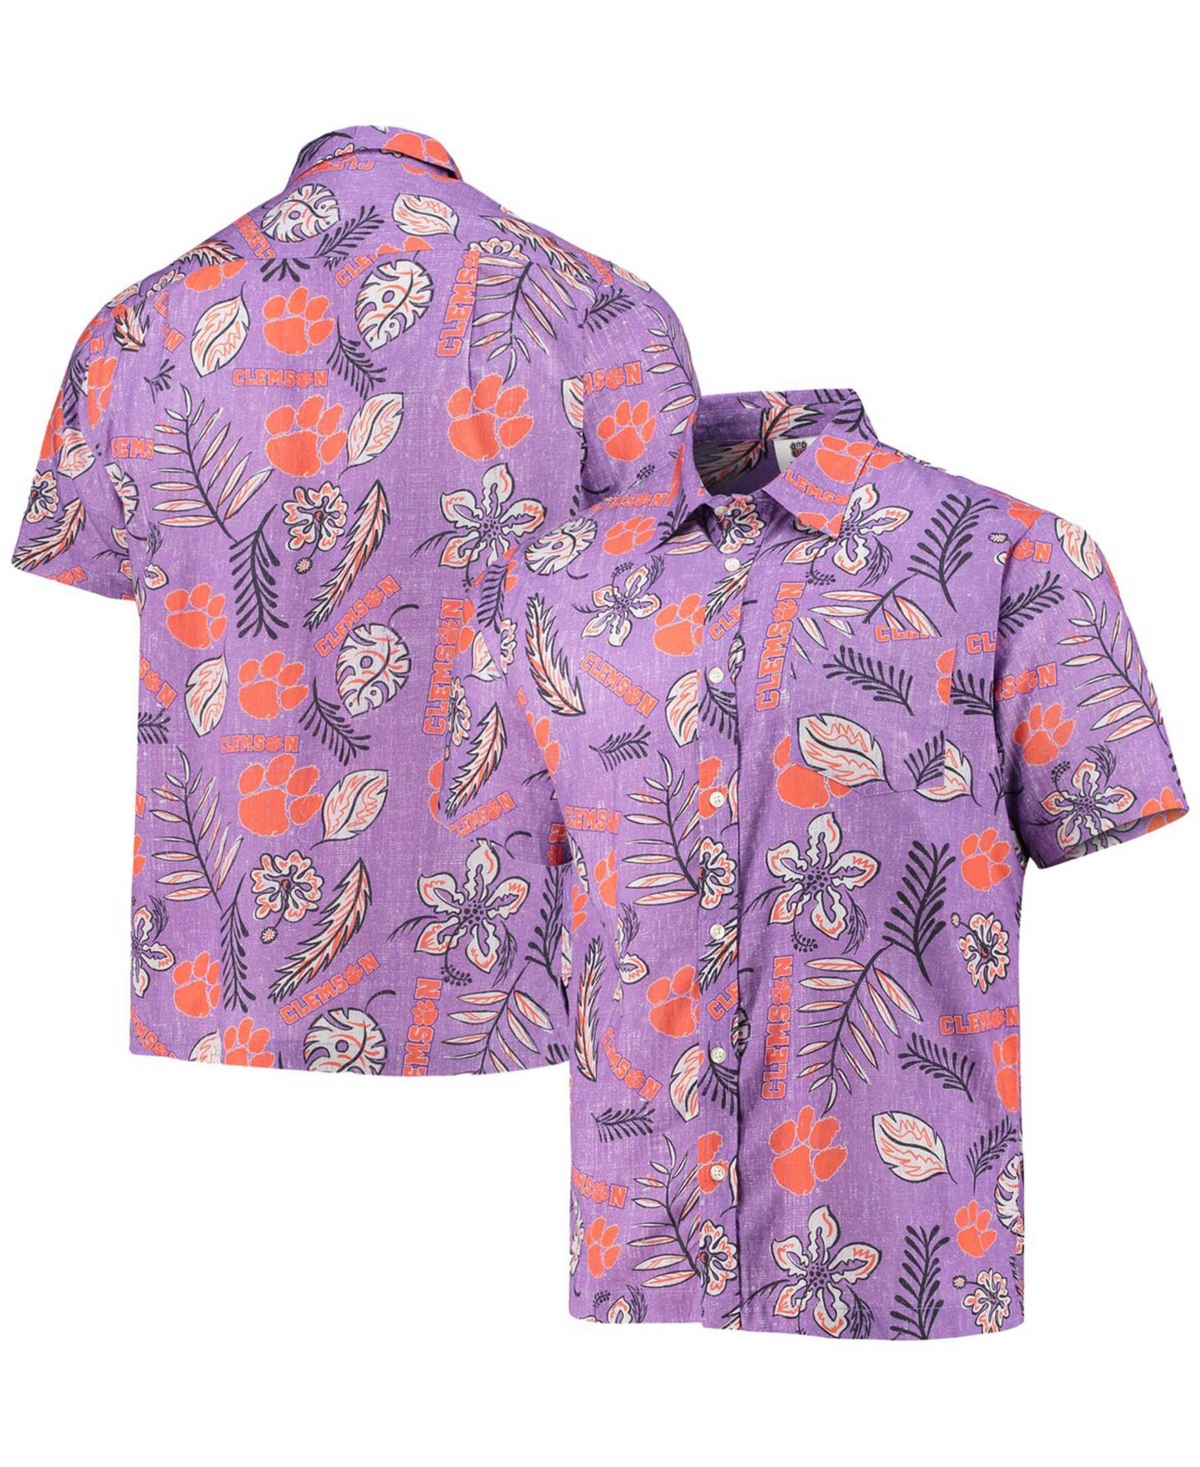 Men's Purple Clemson Tigers Vintage-Like Floral Button-Up Shirt - Purple